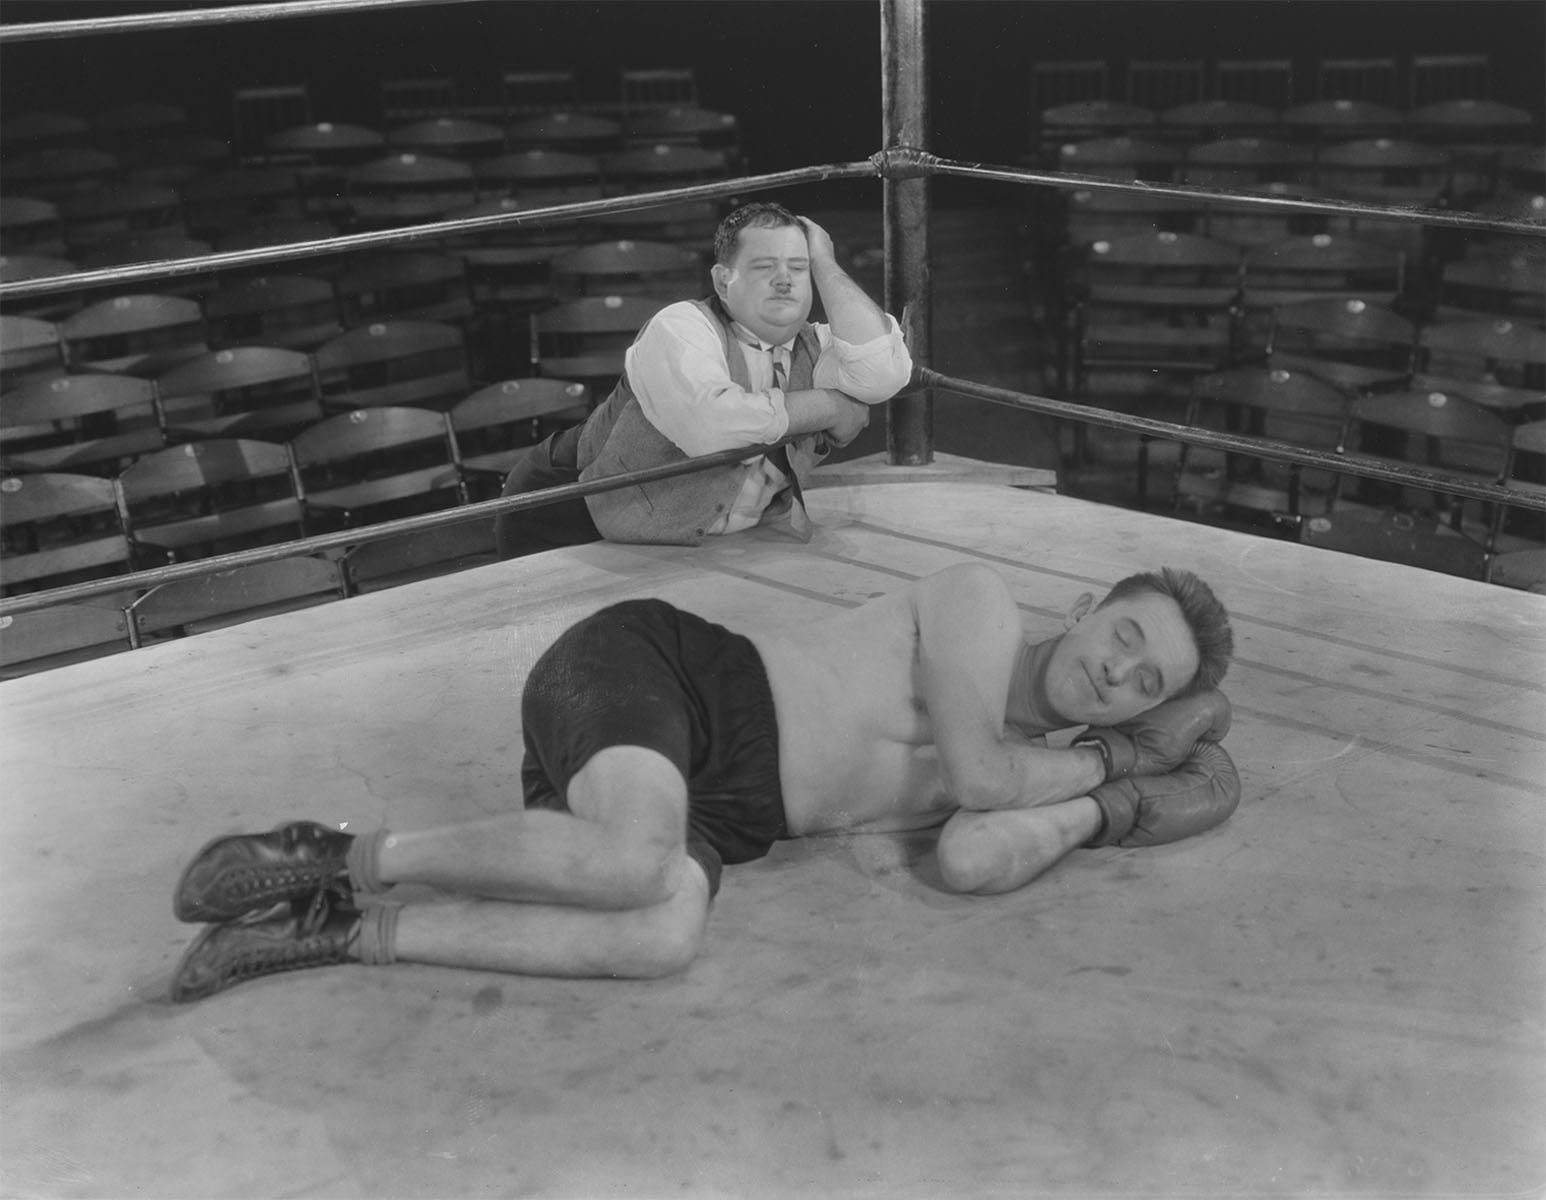 Laurel et Hardy Premiers coups de génie : Photo